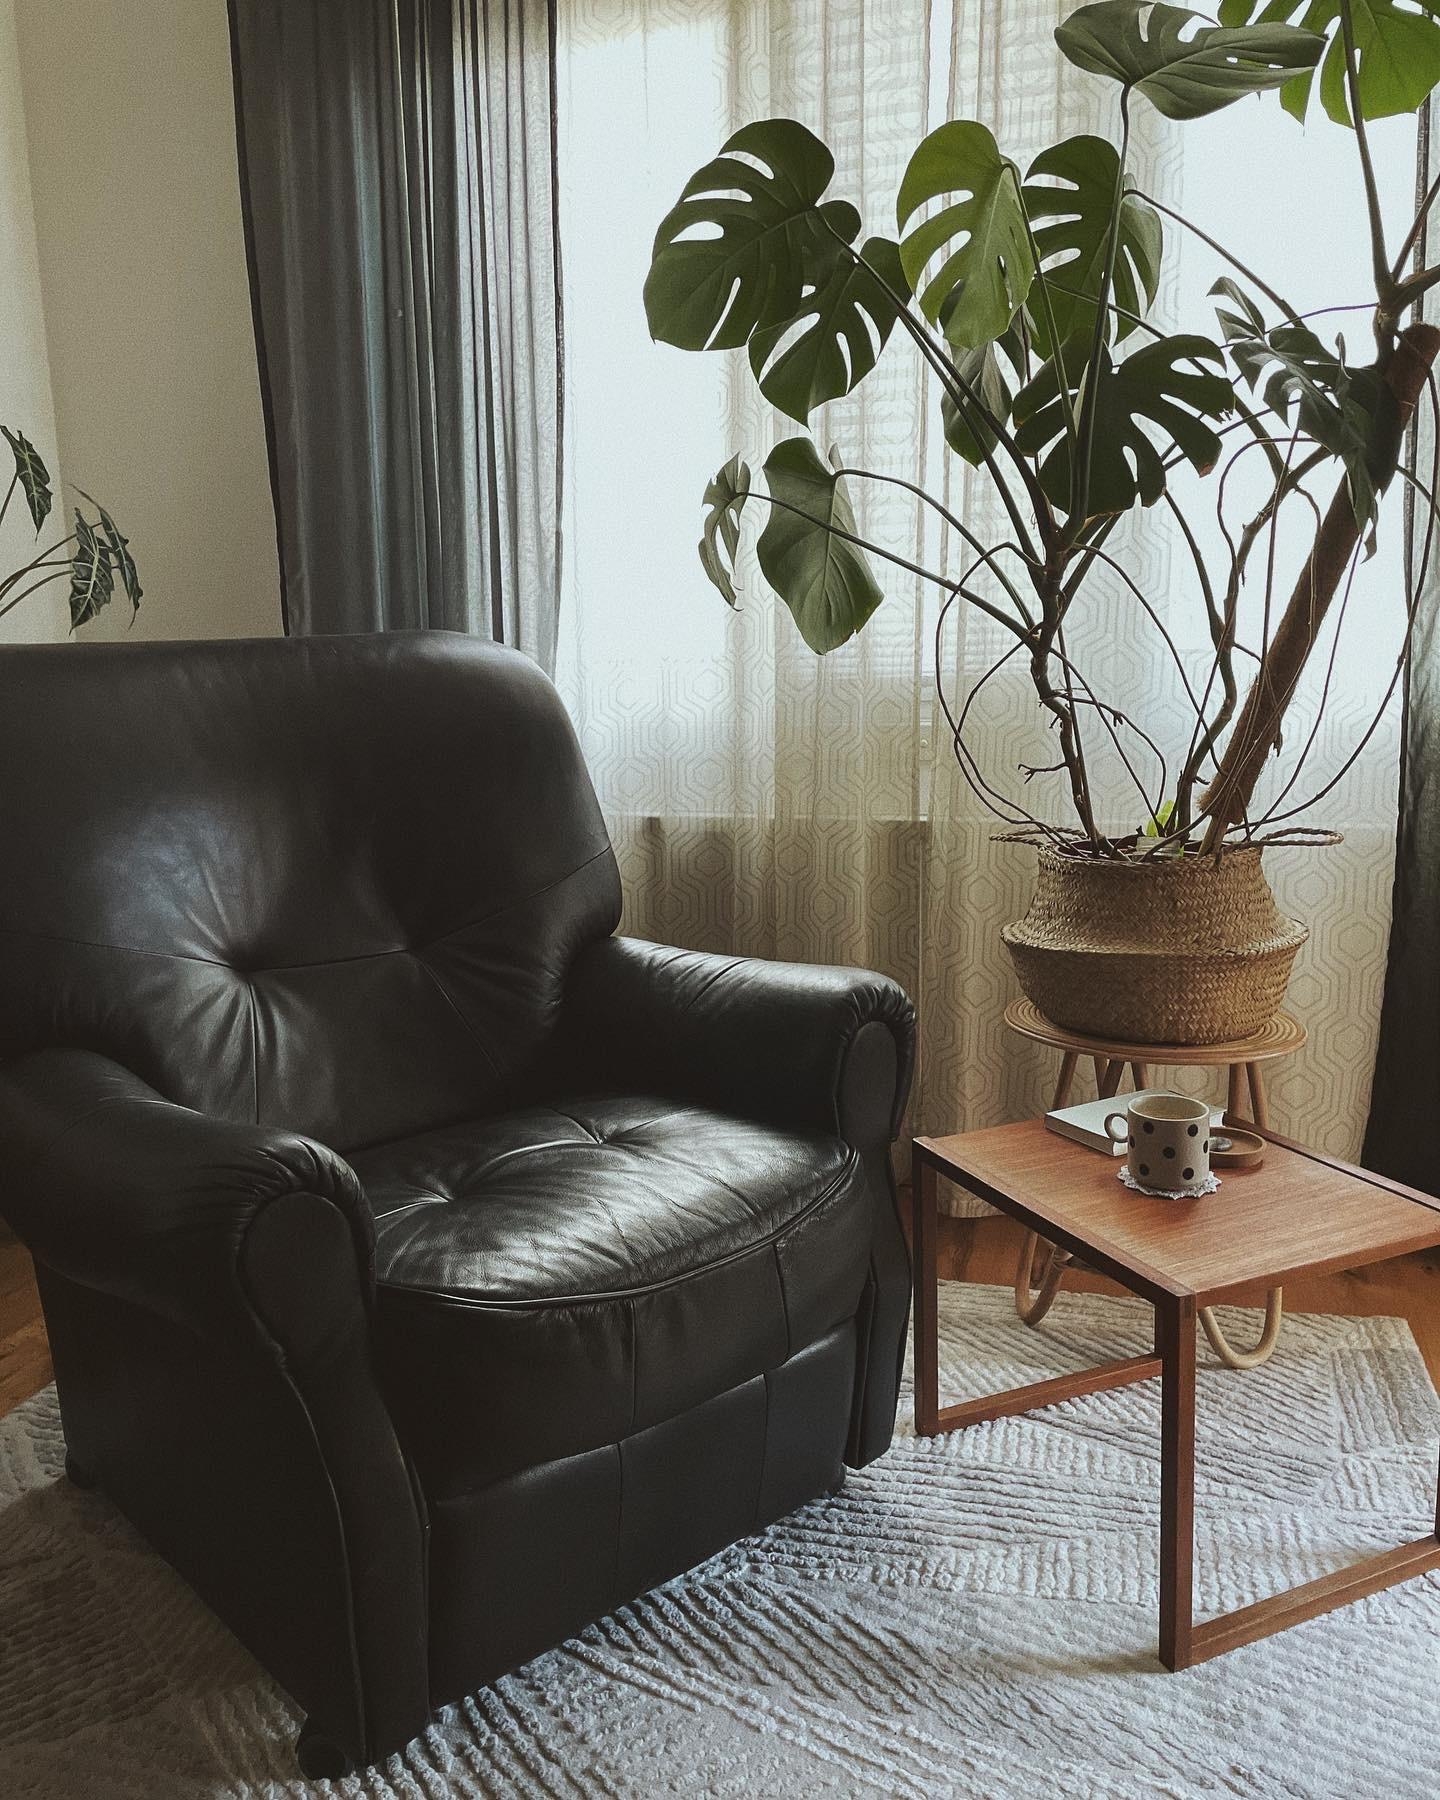 Guten Morgen

#interiordesign #vintage #midcentury #wohnzimmer #livingroom